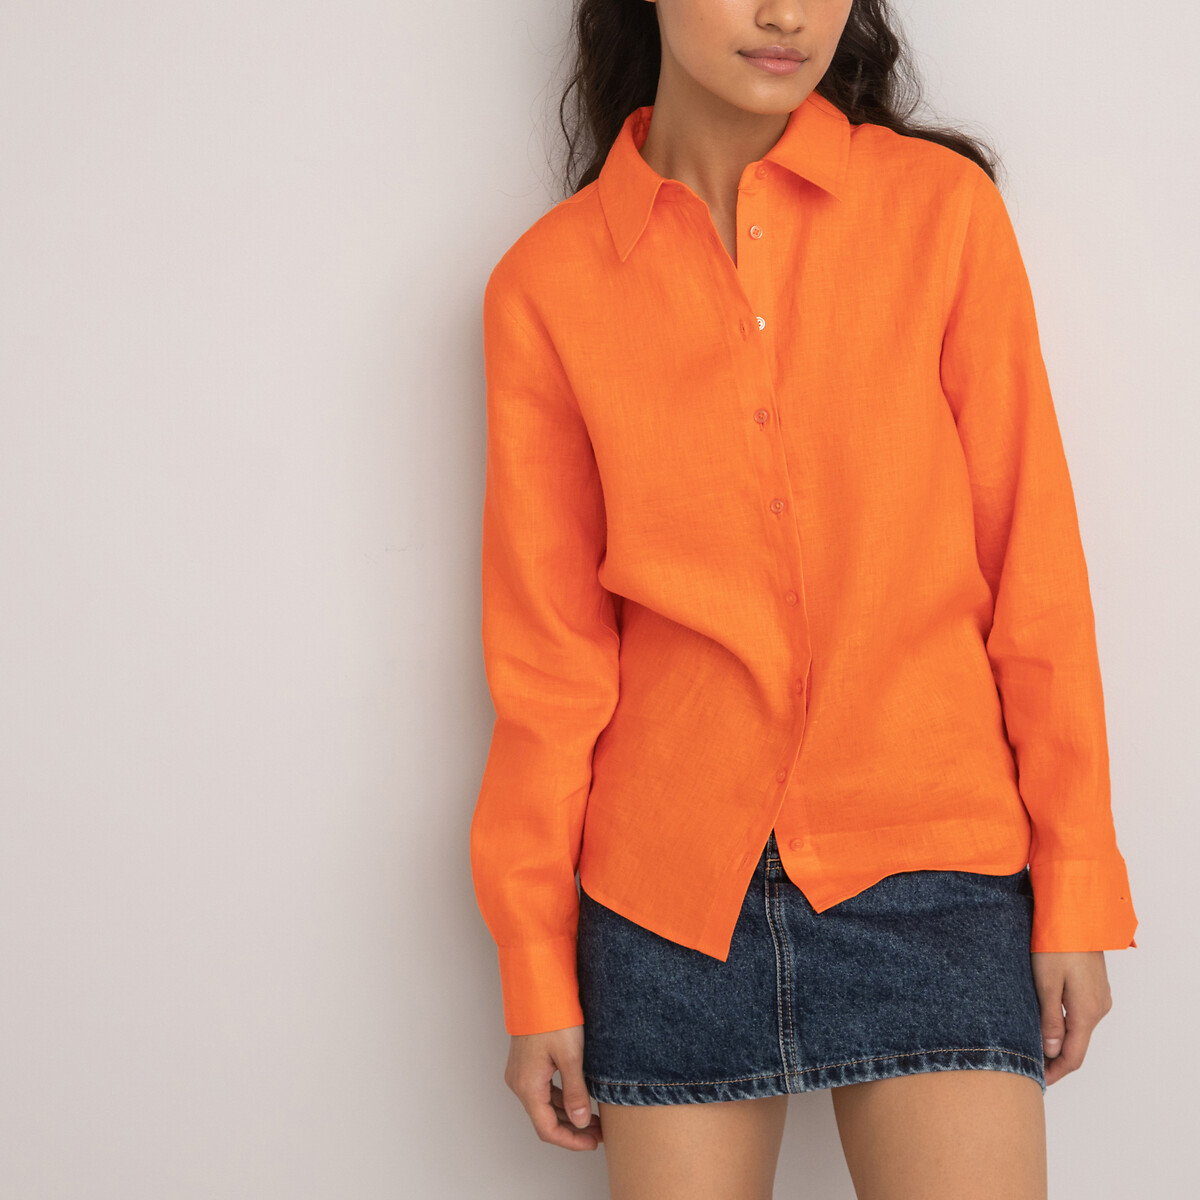 Рубашка Из льна с длинными рукавами 36 (FR) - 42 (RUS) оранжевый LaRedoute, размер 36 (FR) - 42 (RUS) Рубашка Из льна с длинными рукавами 36 (FR) - 42 (RUS) оранжевый - фото 5